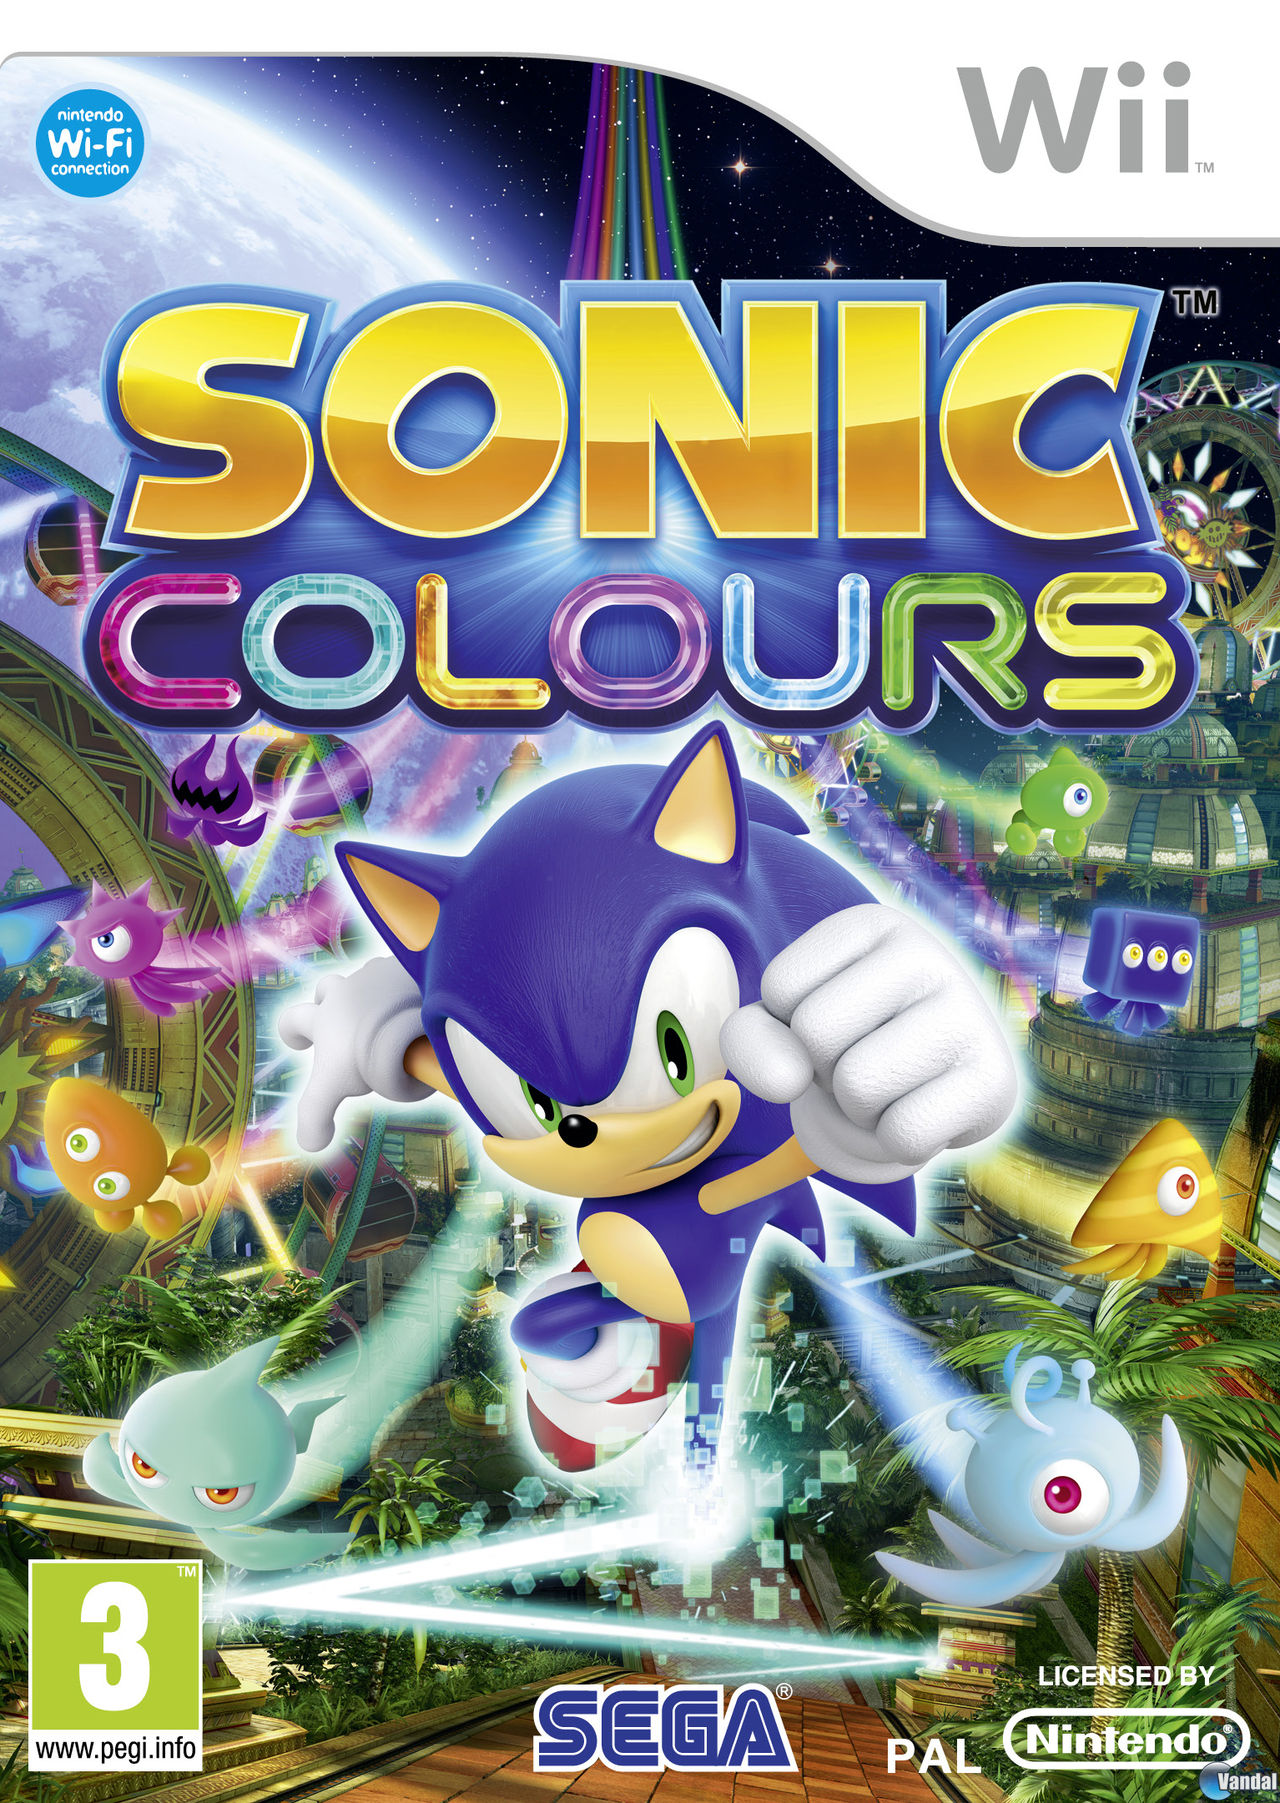 estudiante universitario Tender resumen Sonic Colours - Videojuego (Wii y NDS) - Vandal